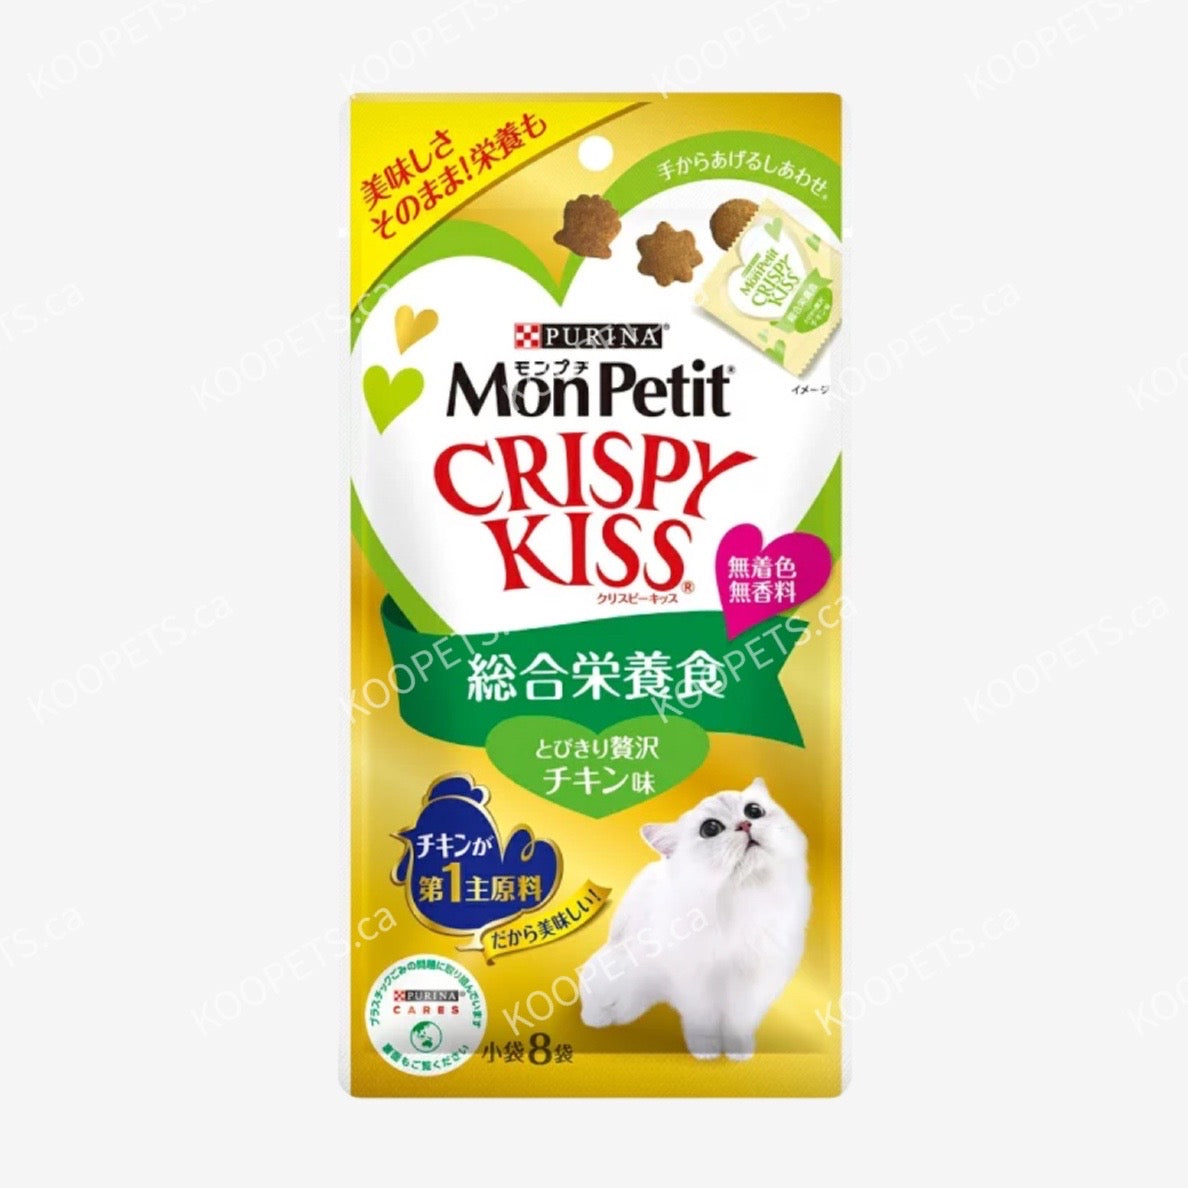 モンプチ Monpetit | Cat Dental Care Treats - Crispy Kiss (Balanced Nutritions)